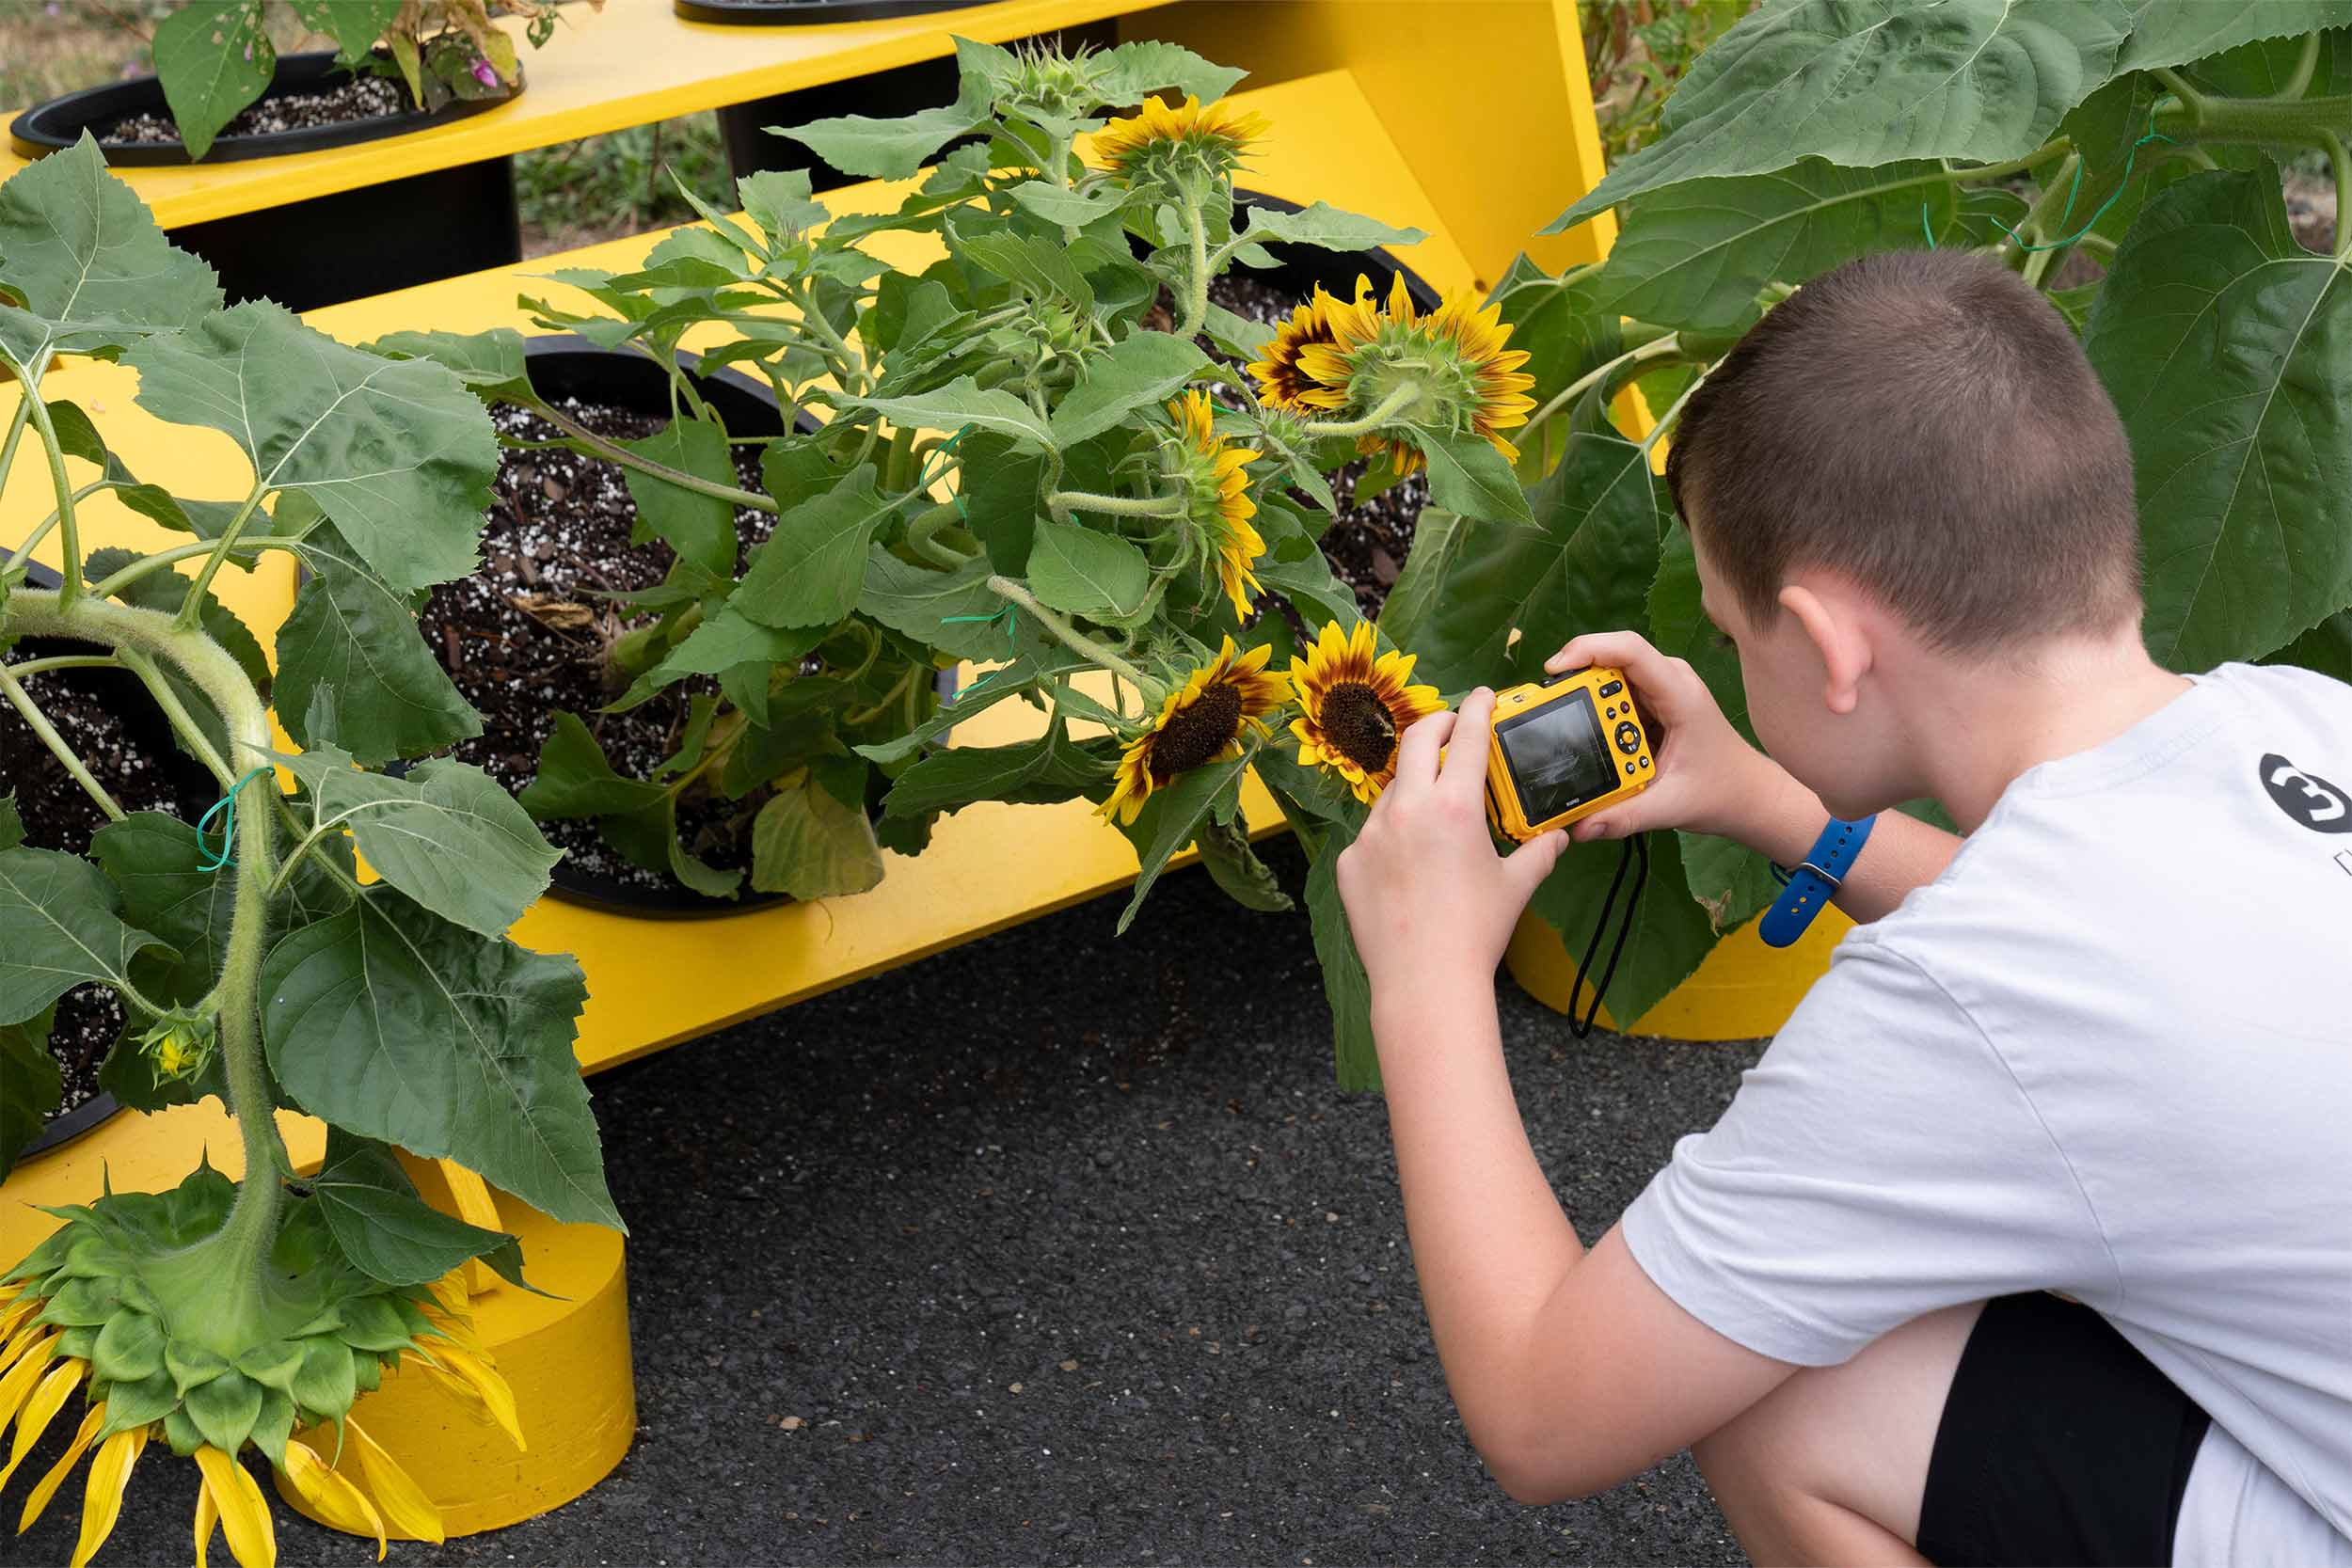 Fifth grader investigating plant